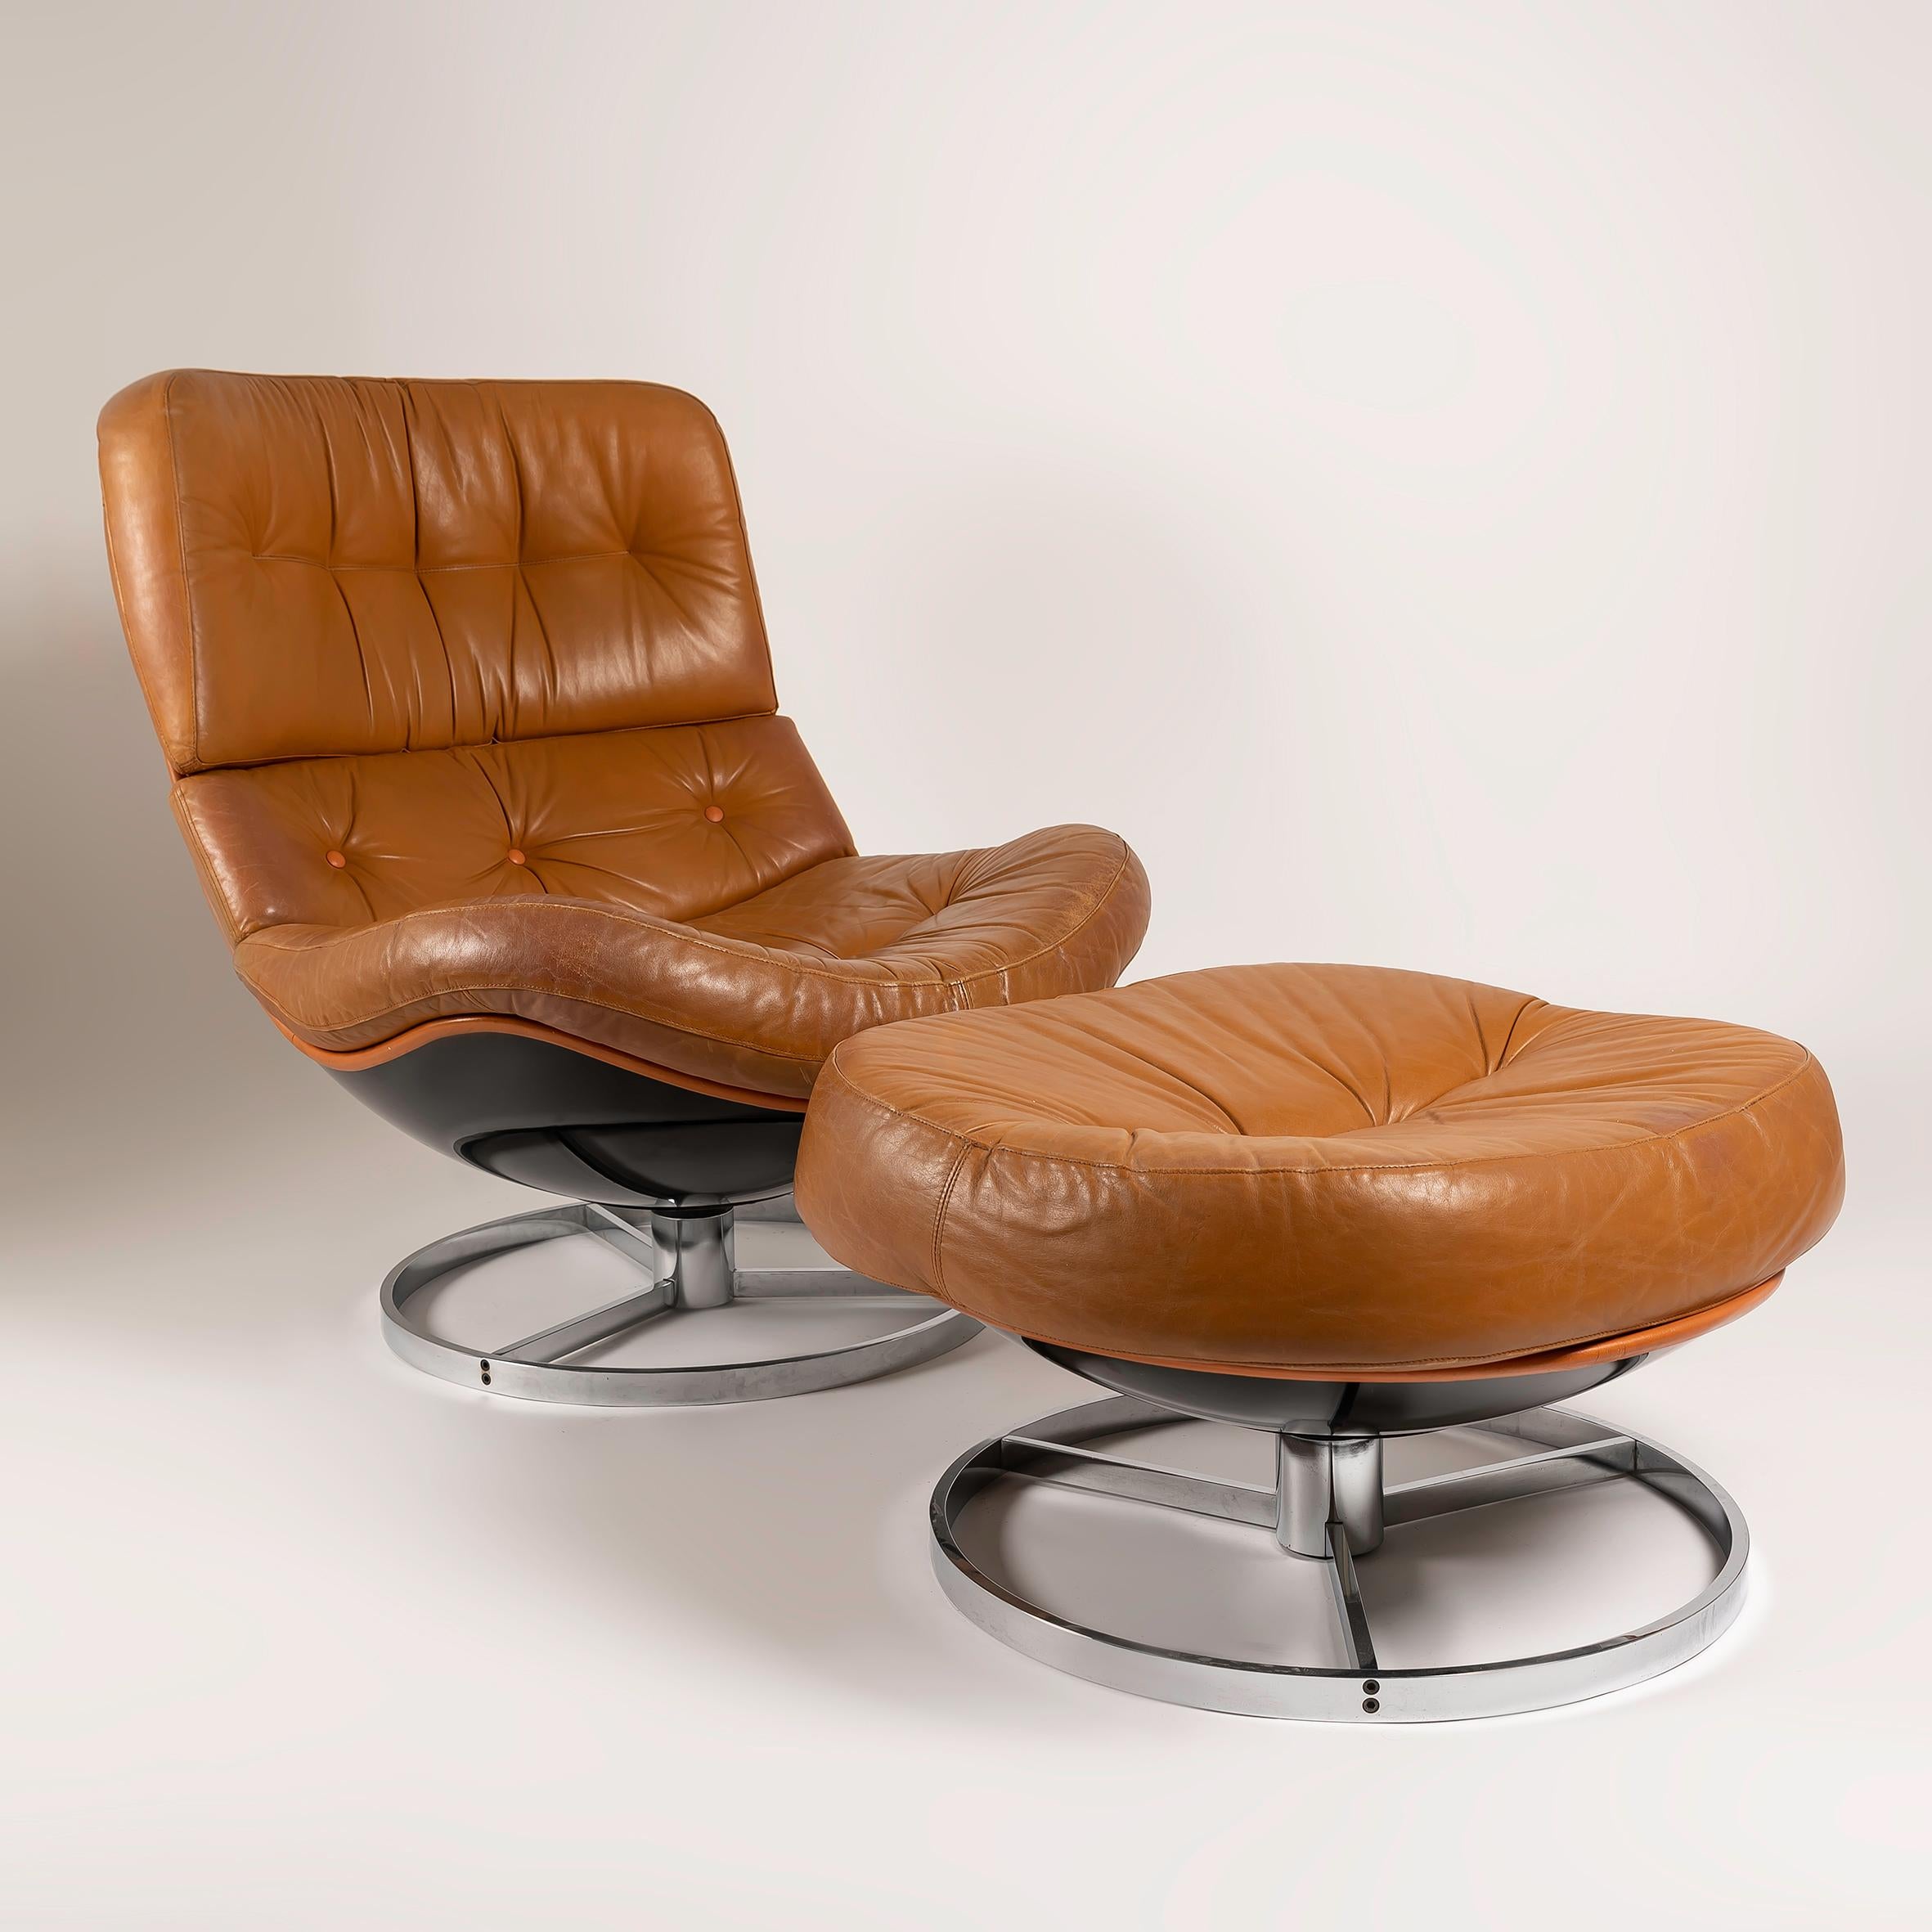 Erleben Sie den Inbegriff von Mid-Century-Charme mit diesem exquisiten Set aus 2 Vintage-Drehsesseln von Michel Cadestin + 1 Otomana, die ursprünglich von Airborne in den 1970er Jahren hergestellt und vertrieben wurden. Diese Sessel, die für ihre